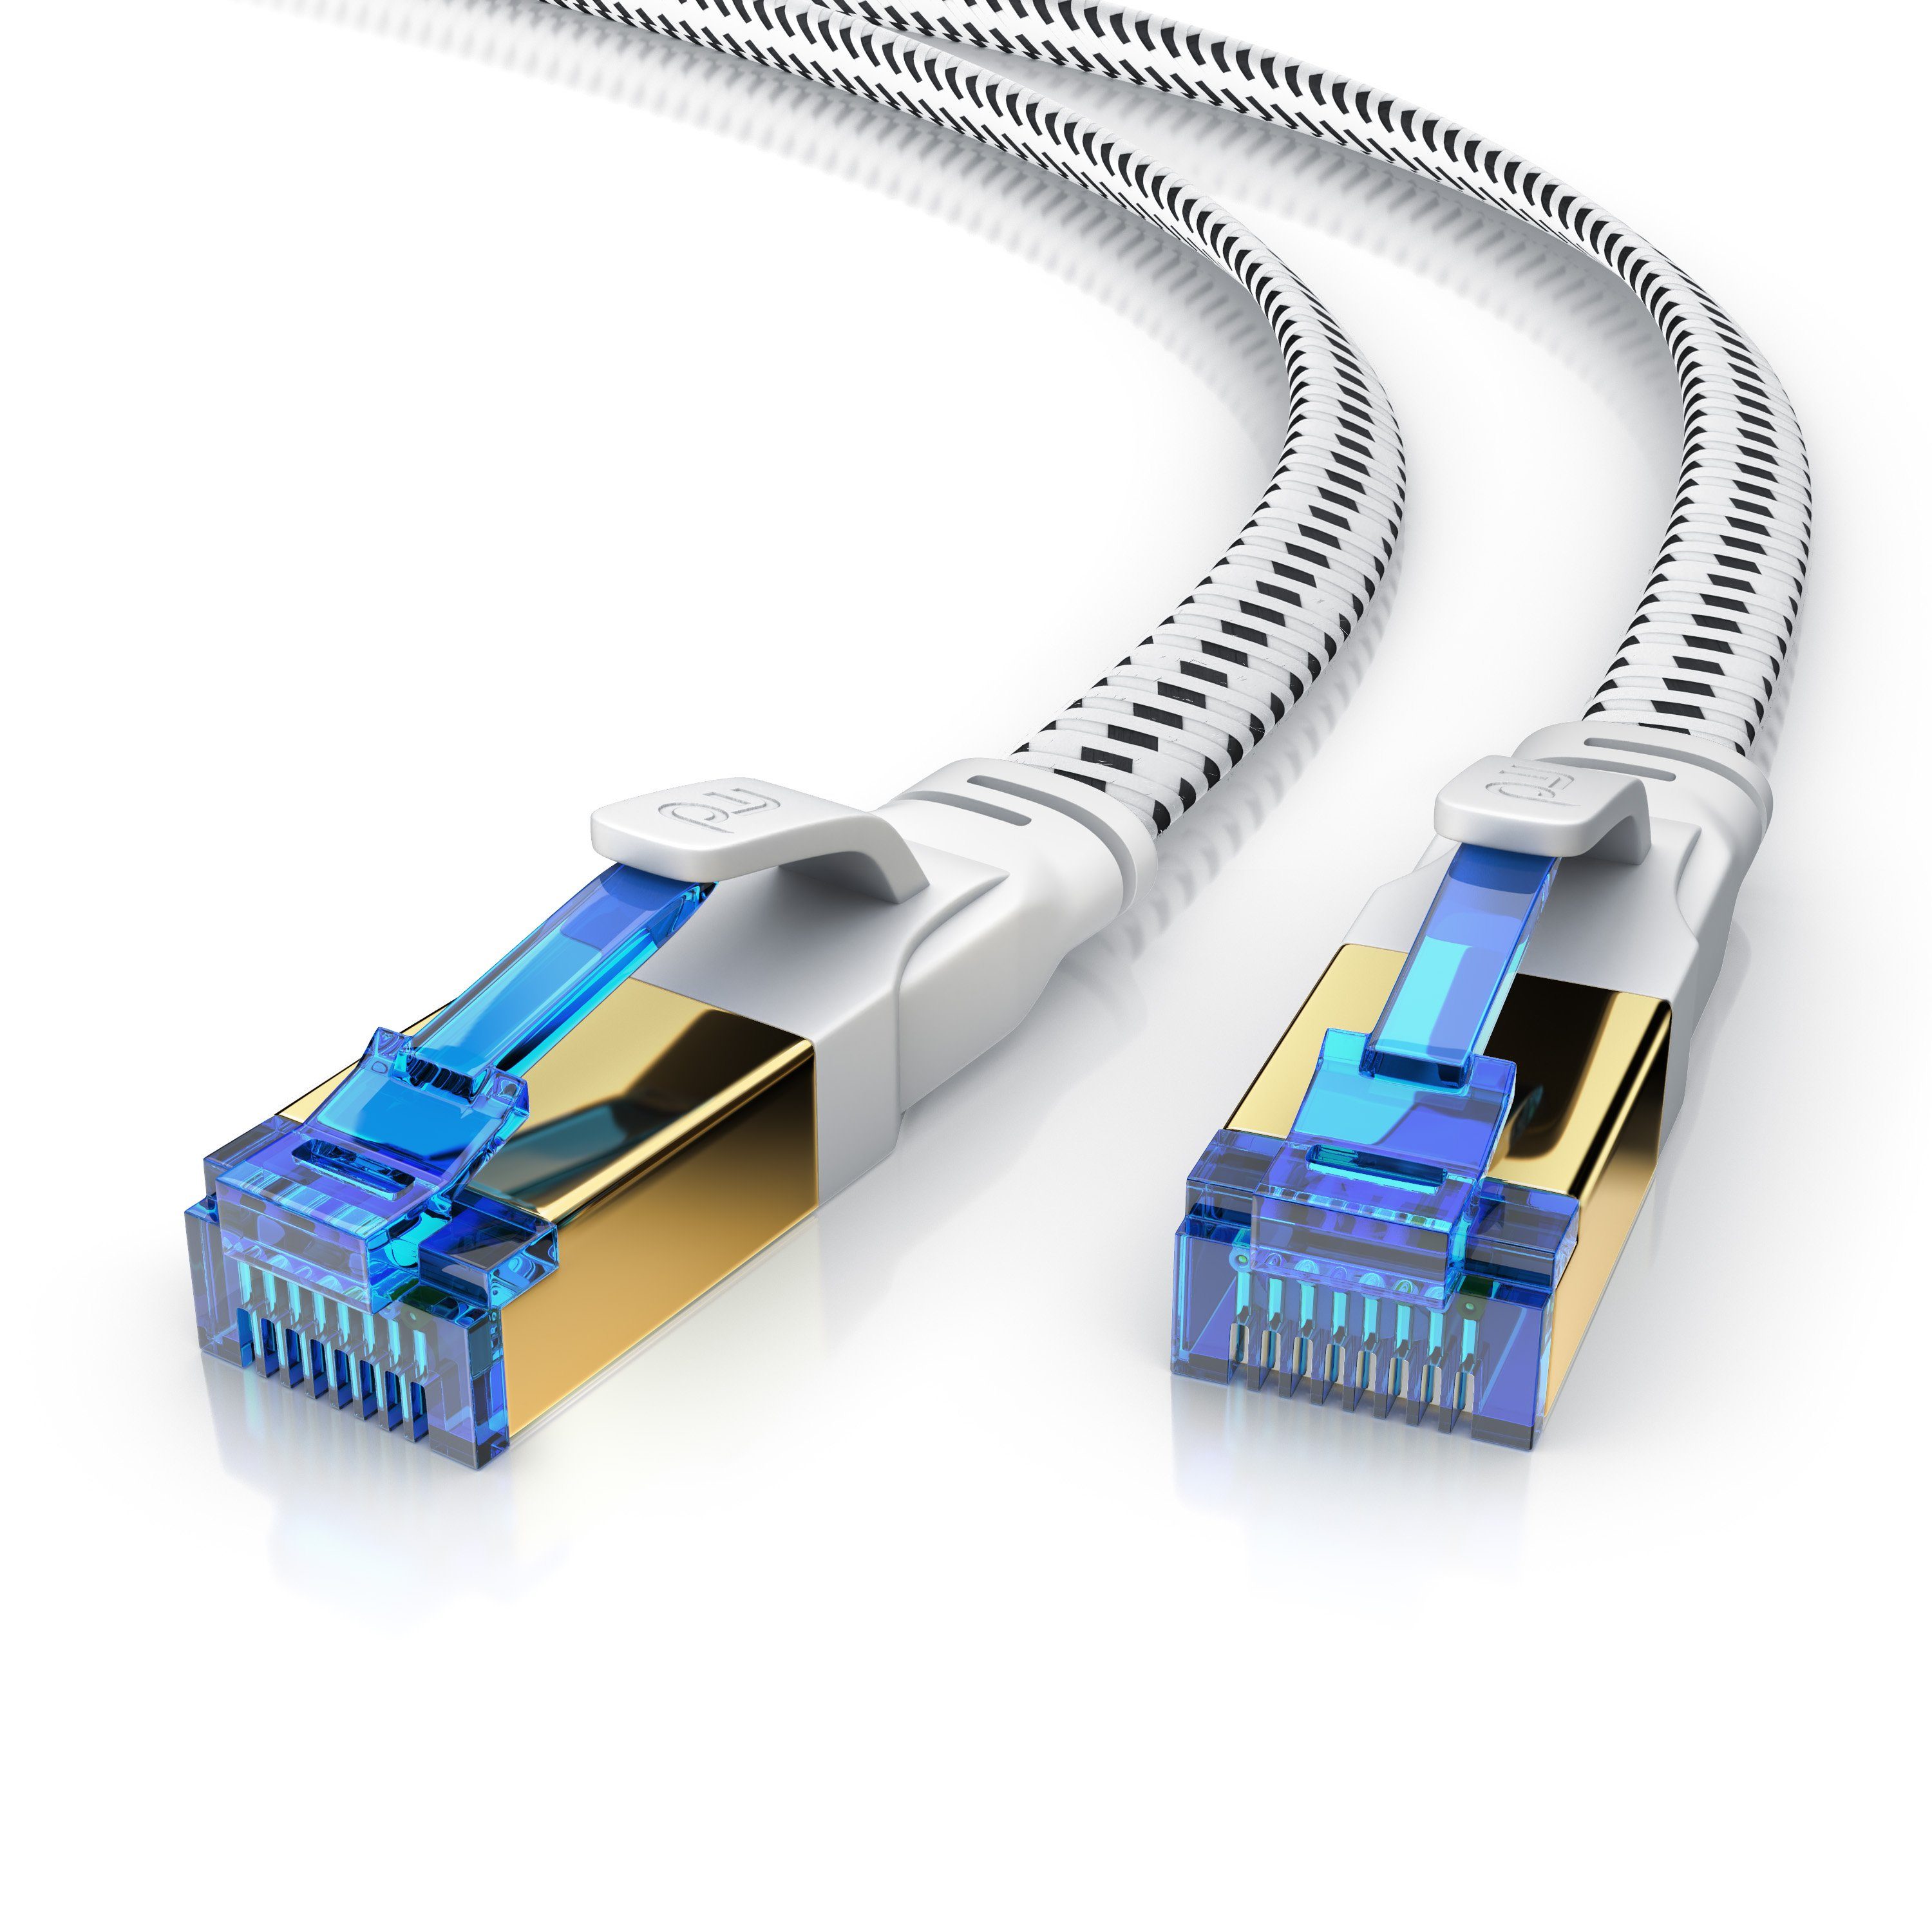 Primewire LAN-Kabel, CAT.8, RJ-45 (Ethernet) (25 cm), Patchkabel flach CAT 8, Baumwollmantel Flachband Netzwerkkabel - 0,25m